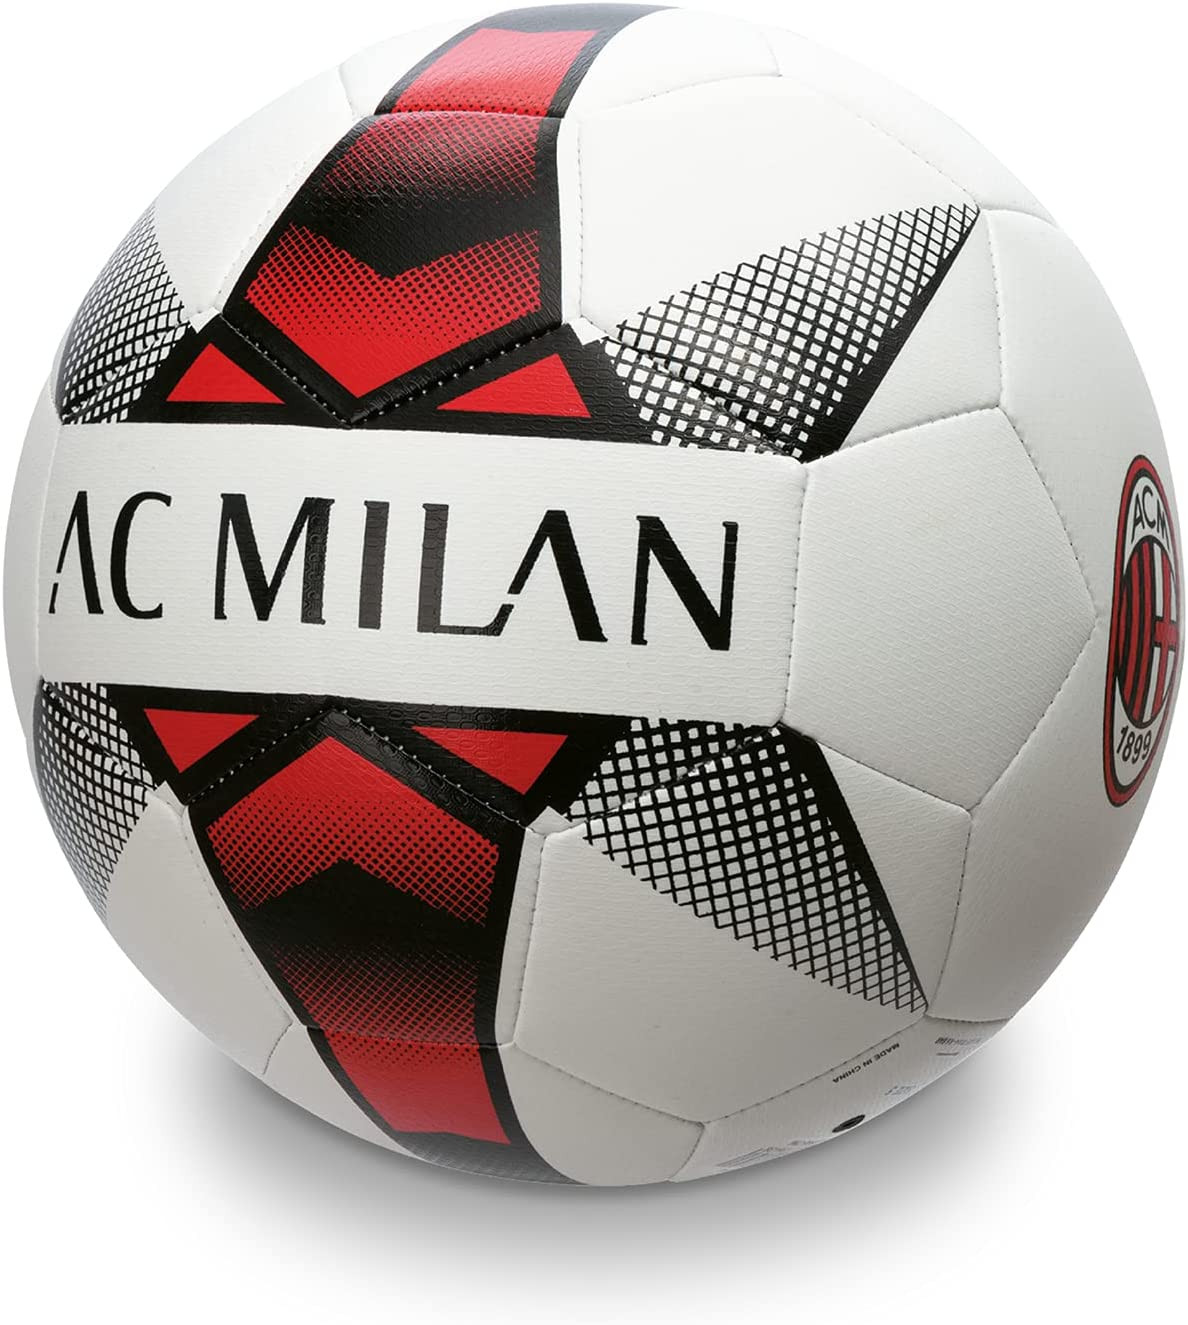 Pallone da Calcio AC Milan Misura 5 PS 09278 Pelusciamo Store Marchirolo